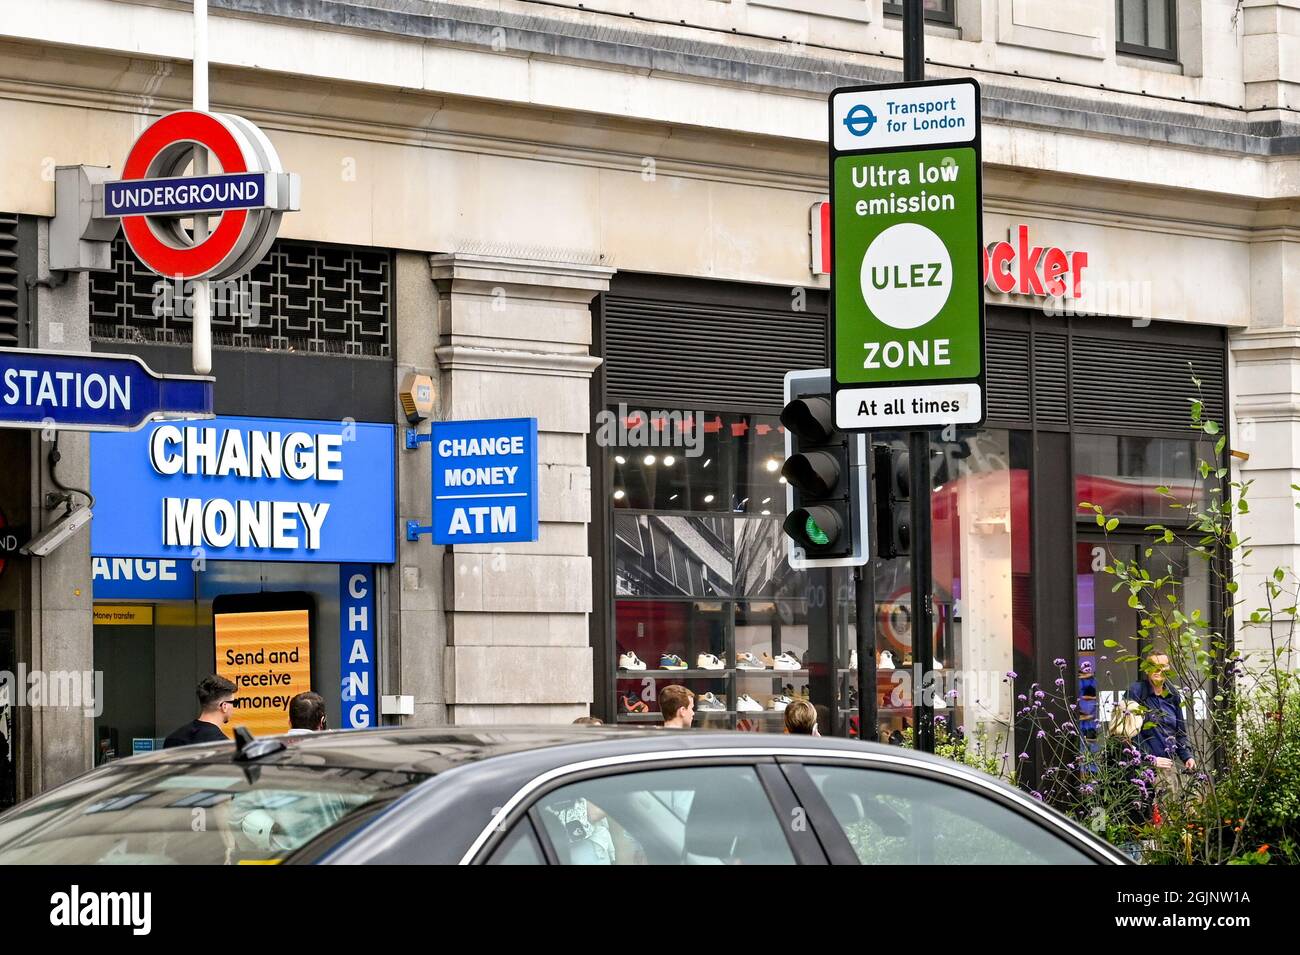 Londra, Inghilterra - Agosto 2021: Accedi al centro di Londra avvertendo che si stanno entrando in una zona a bassissime emissioni Foto Stock